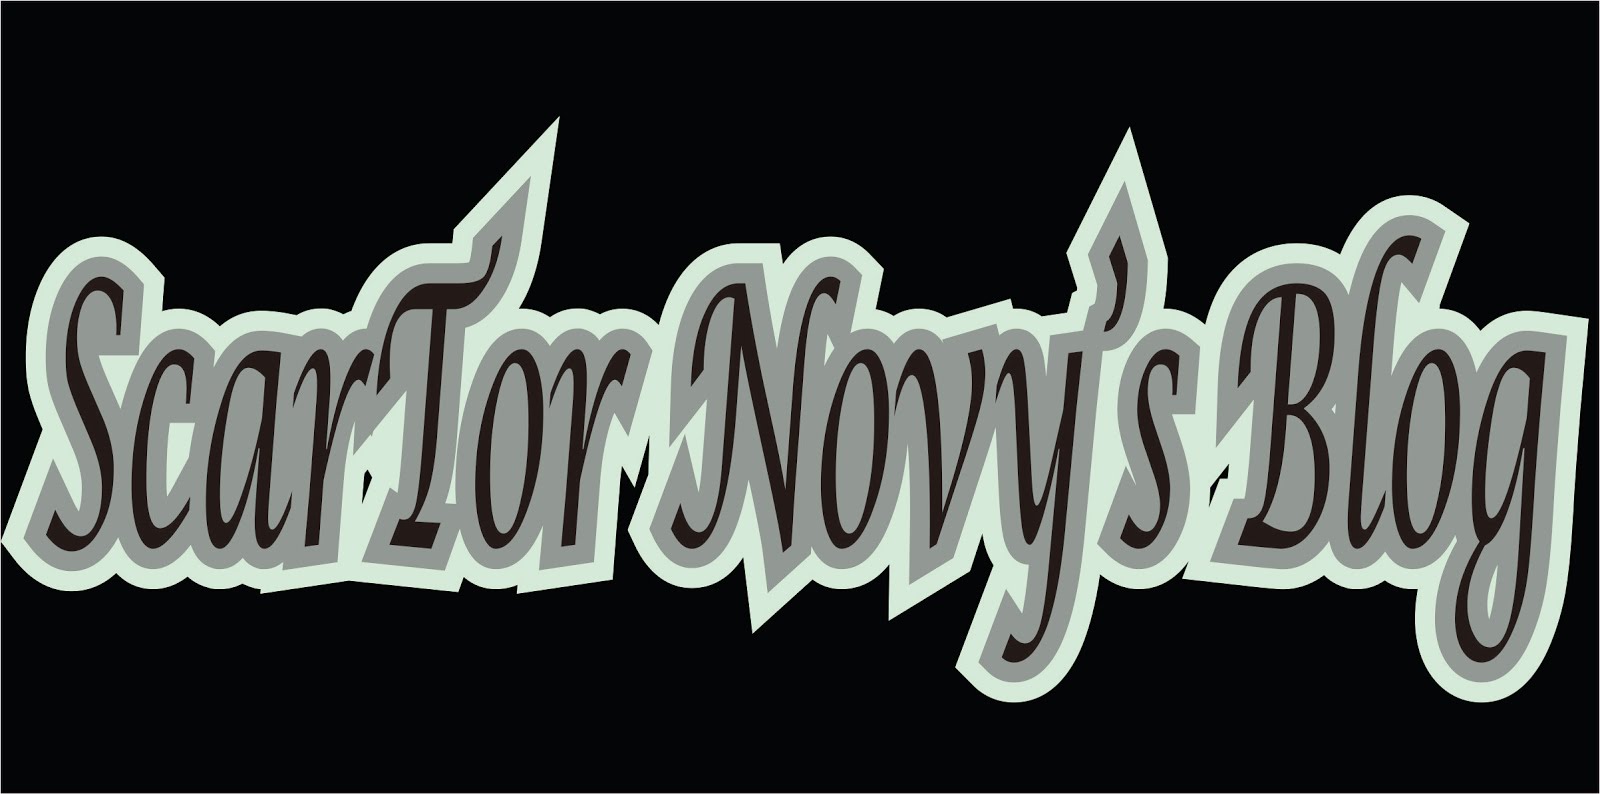 ScarTor Novy's Blog